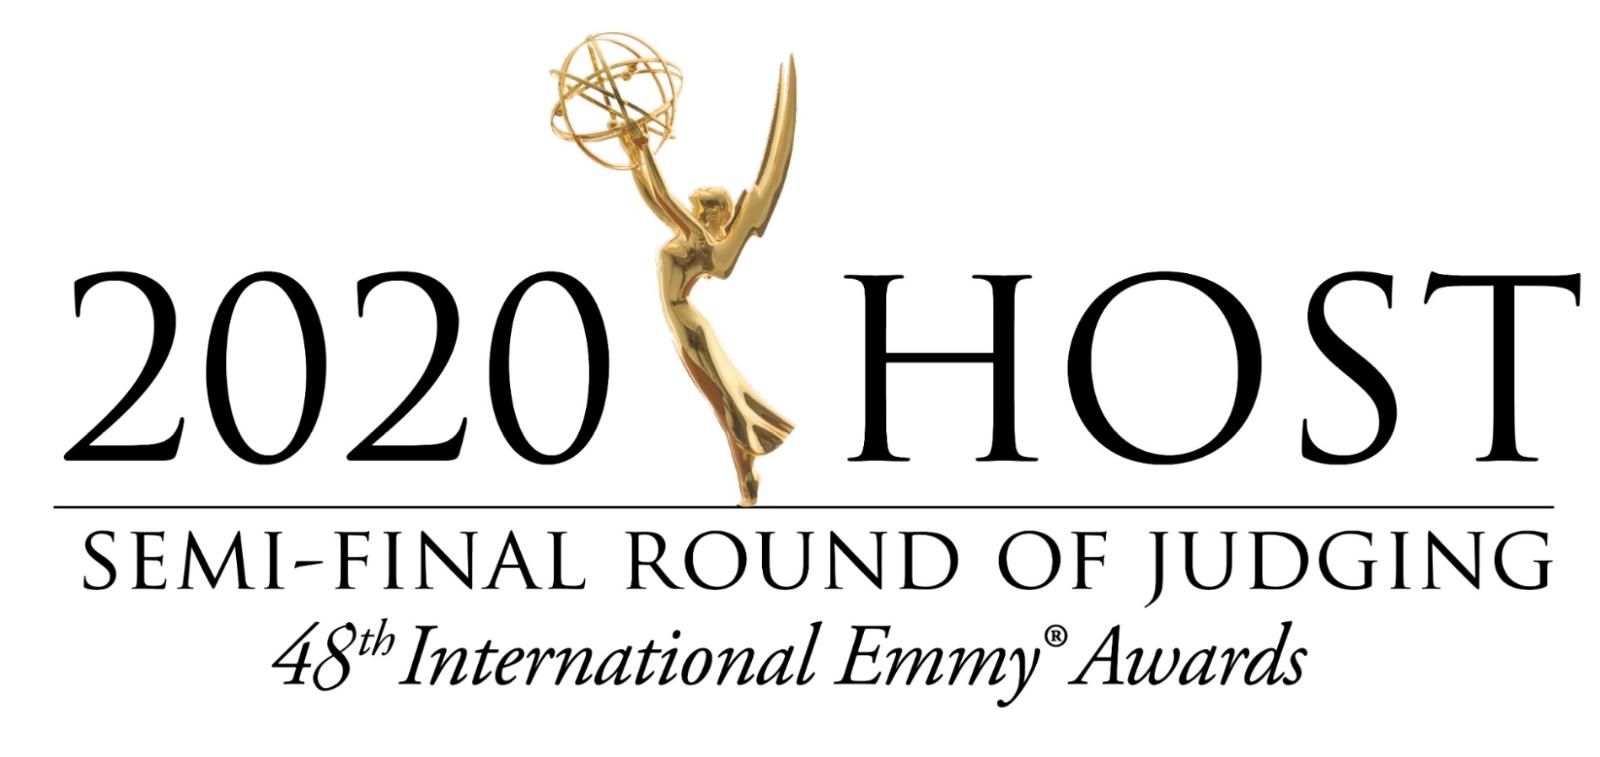 Российский полуфинал премии International Emmy Awards 2020 впервые пройдет в онлайн-формате